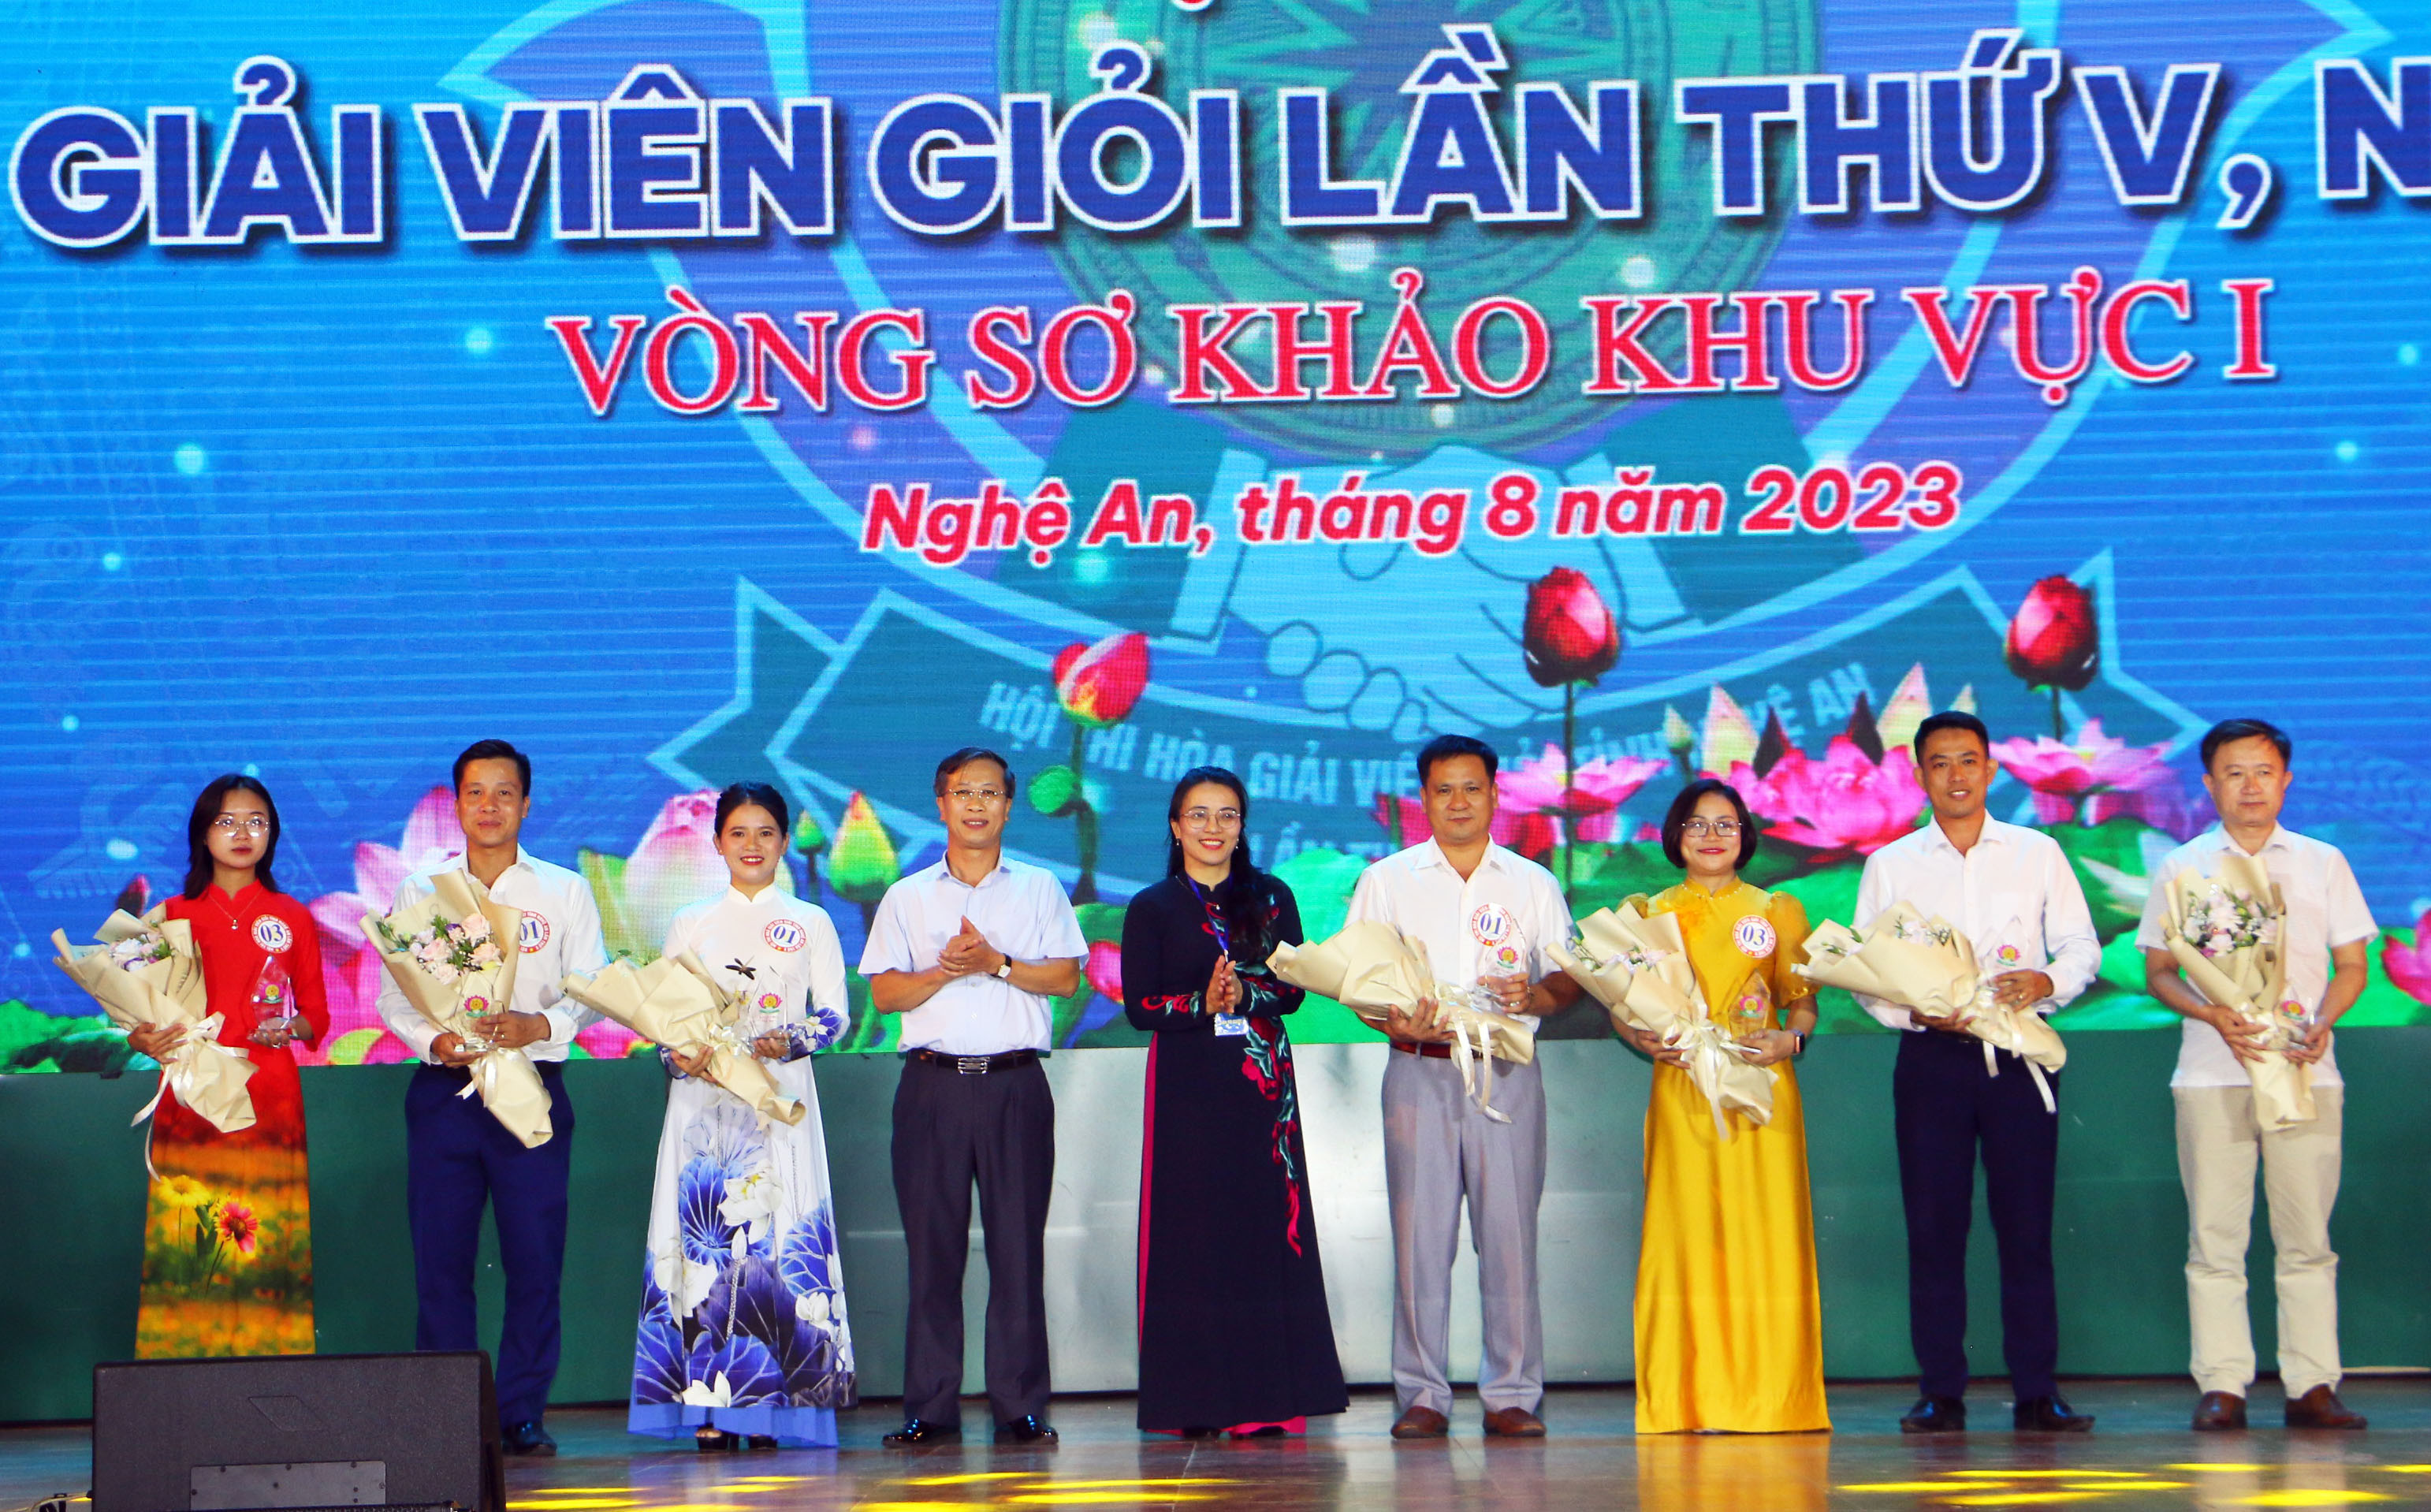 Đồng chí Hoàng Thị Thu Trang, Giám đốc Sở Tư pháp, Phó Trưởng Ban Thường trực tặng hoa cho các đội thi. Ảnh: An Quỳnh.